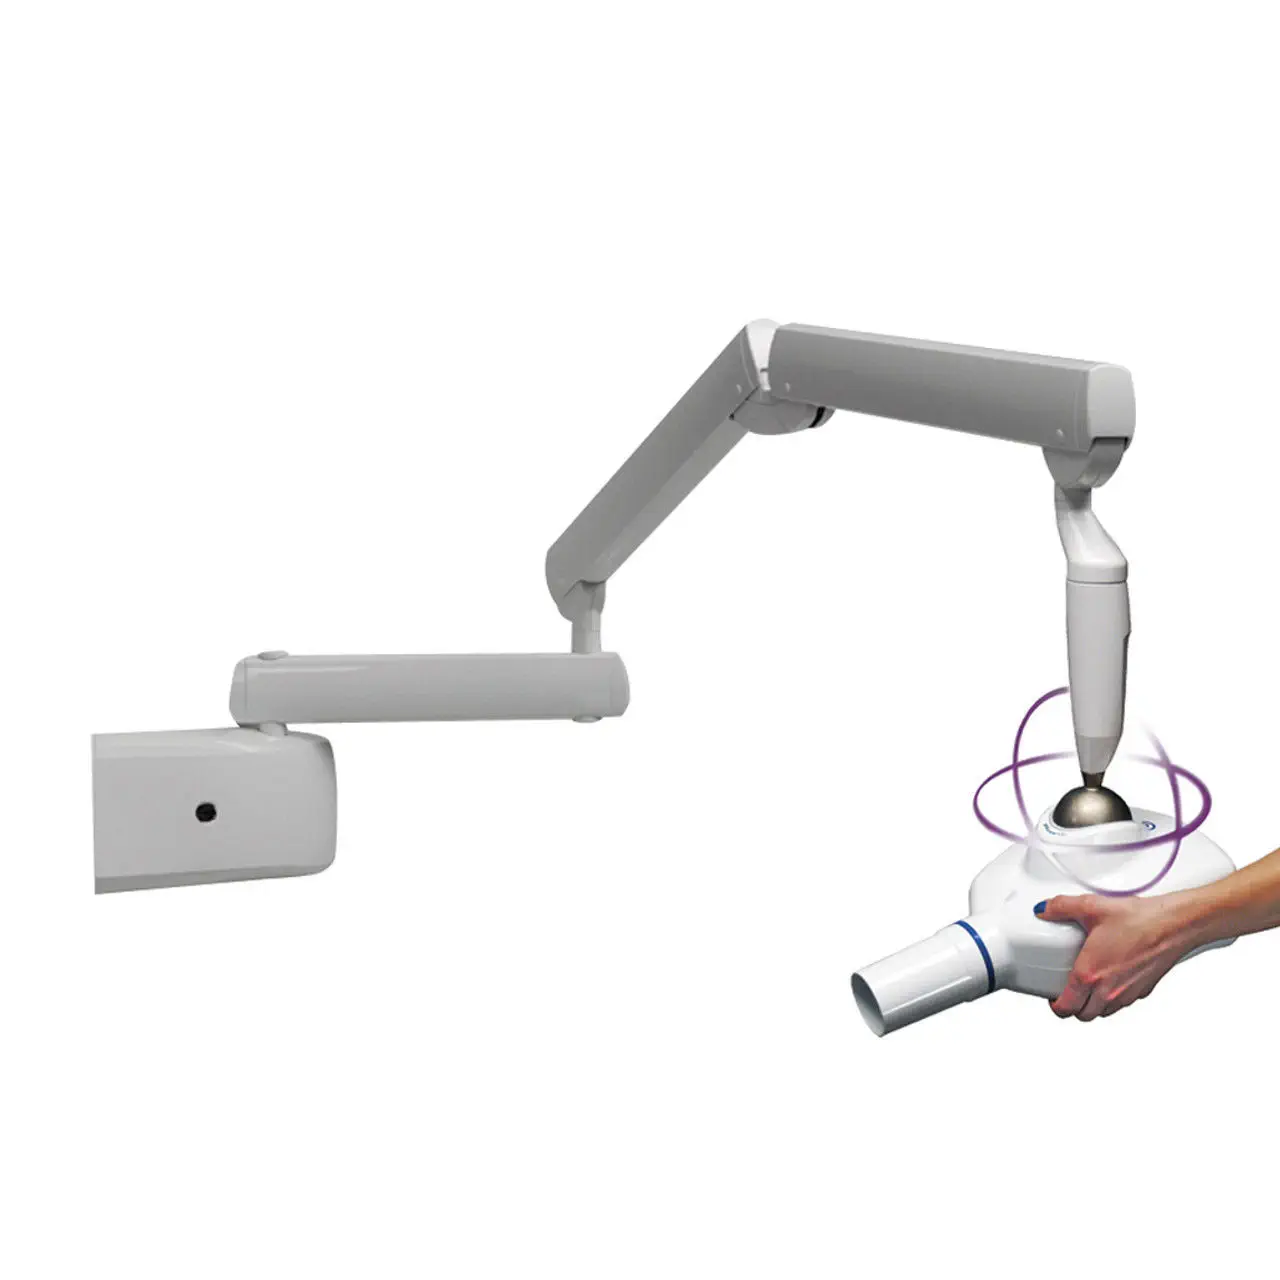 เครื่องเอกซเรย์ฟันระบบดิจิตอลติดผนังสำหรับสัตว์ Veterinary dental X-ray generator Revolution 4DC  iM3